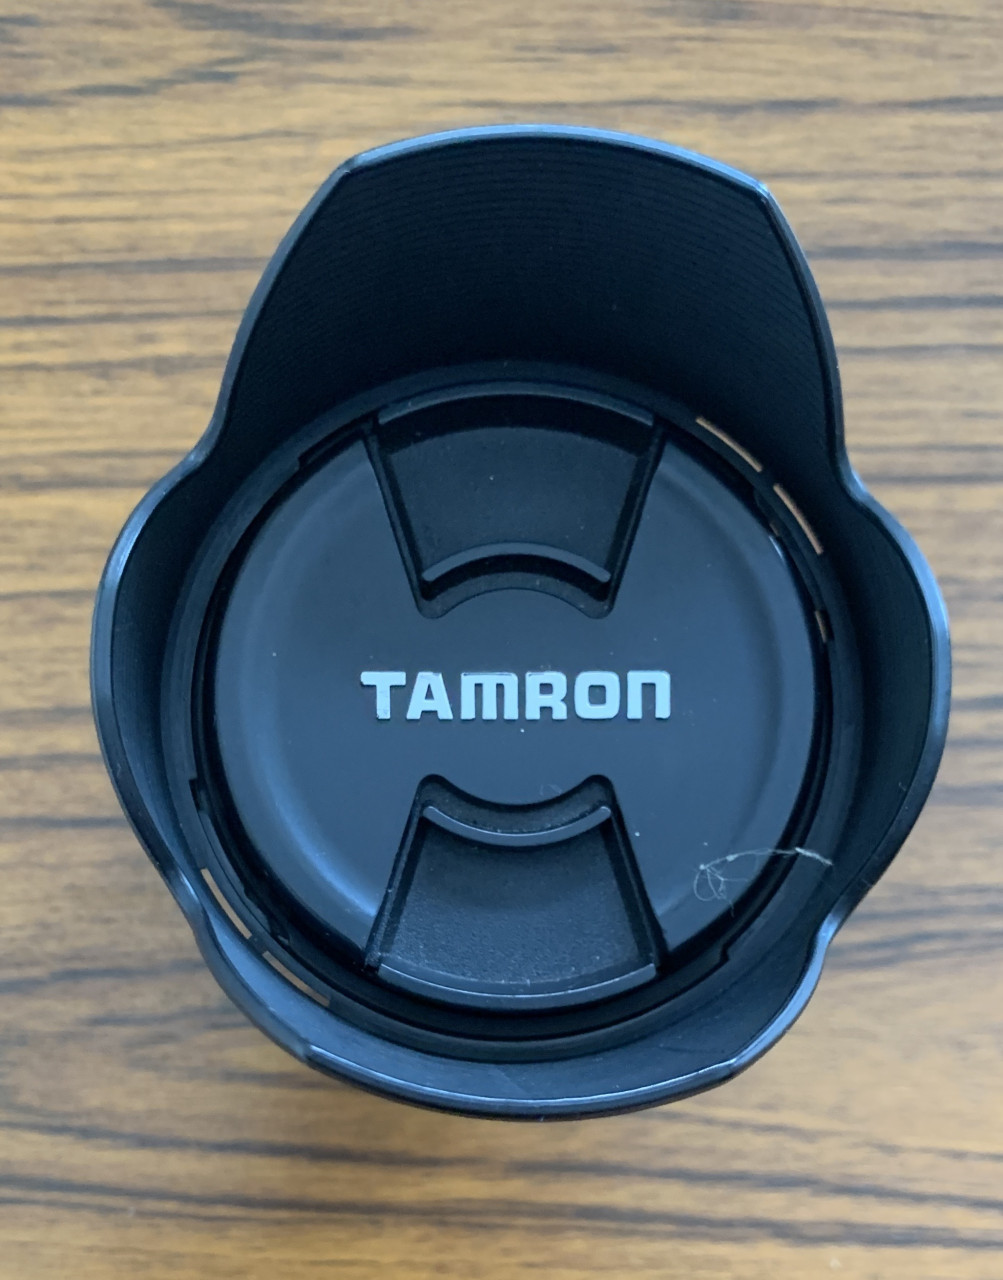 Tamron AF 18-300mm